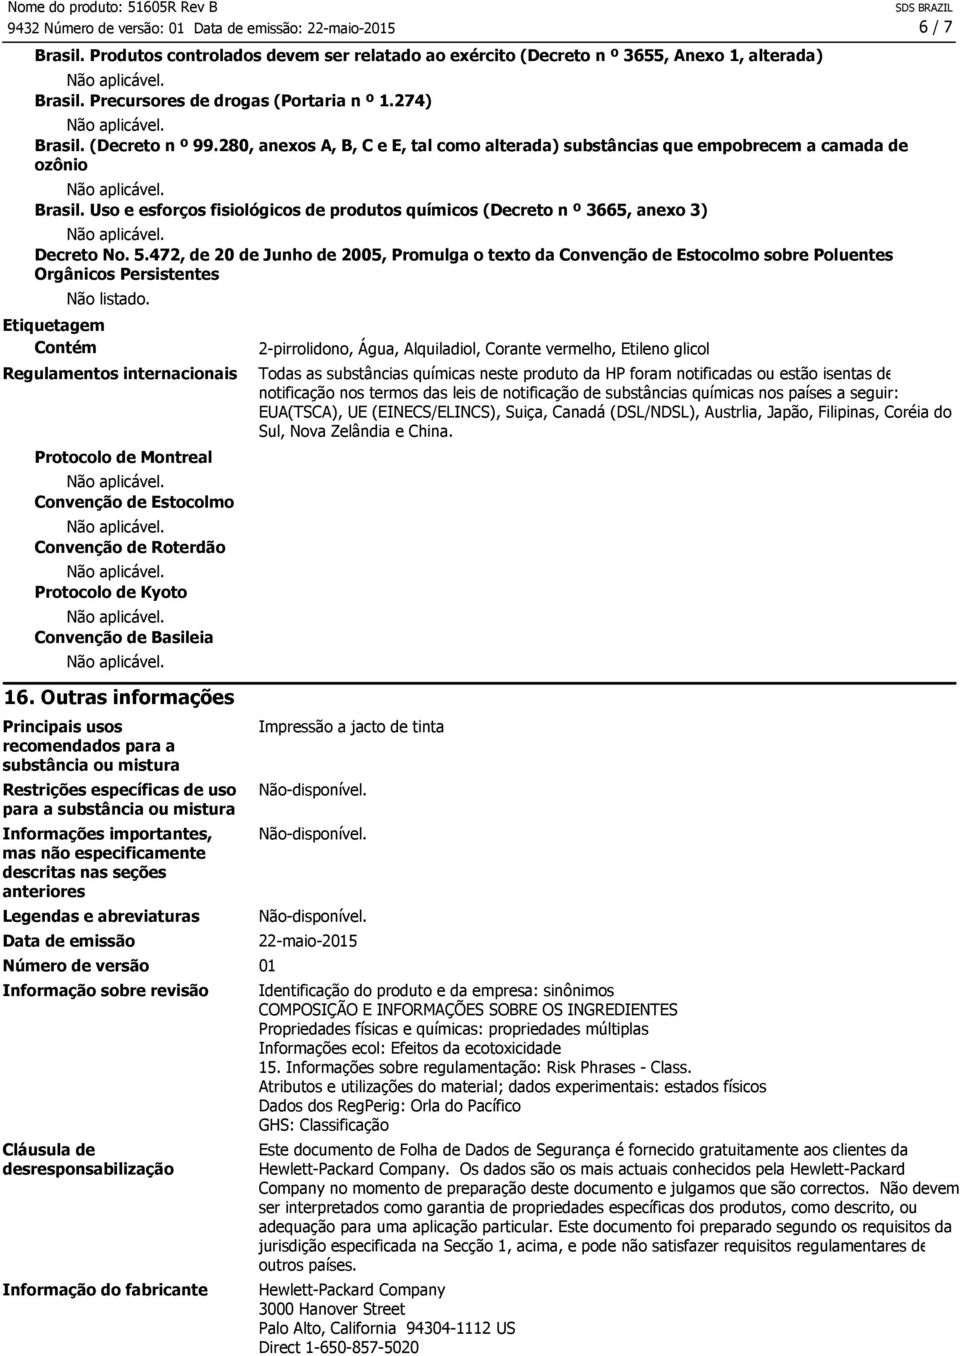 472, de 20 de Junho de 2005, Promulga o texto da Convenção de Estocolmo sobre Poluentes Orgânicos Persistentes Etiquetagem Contém Não listado.